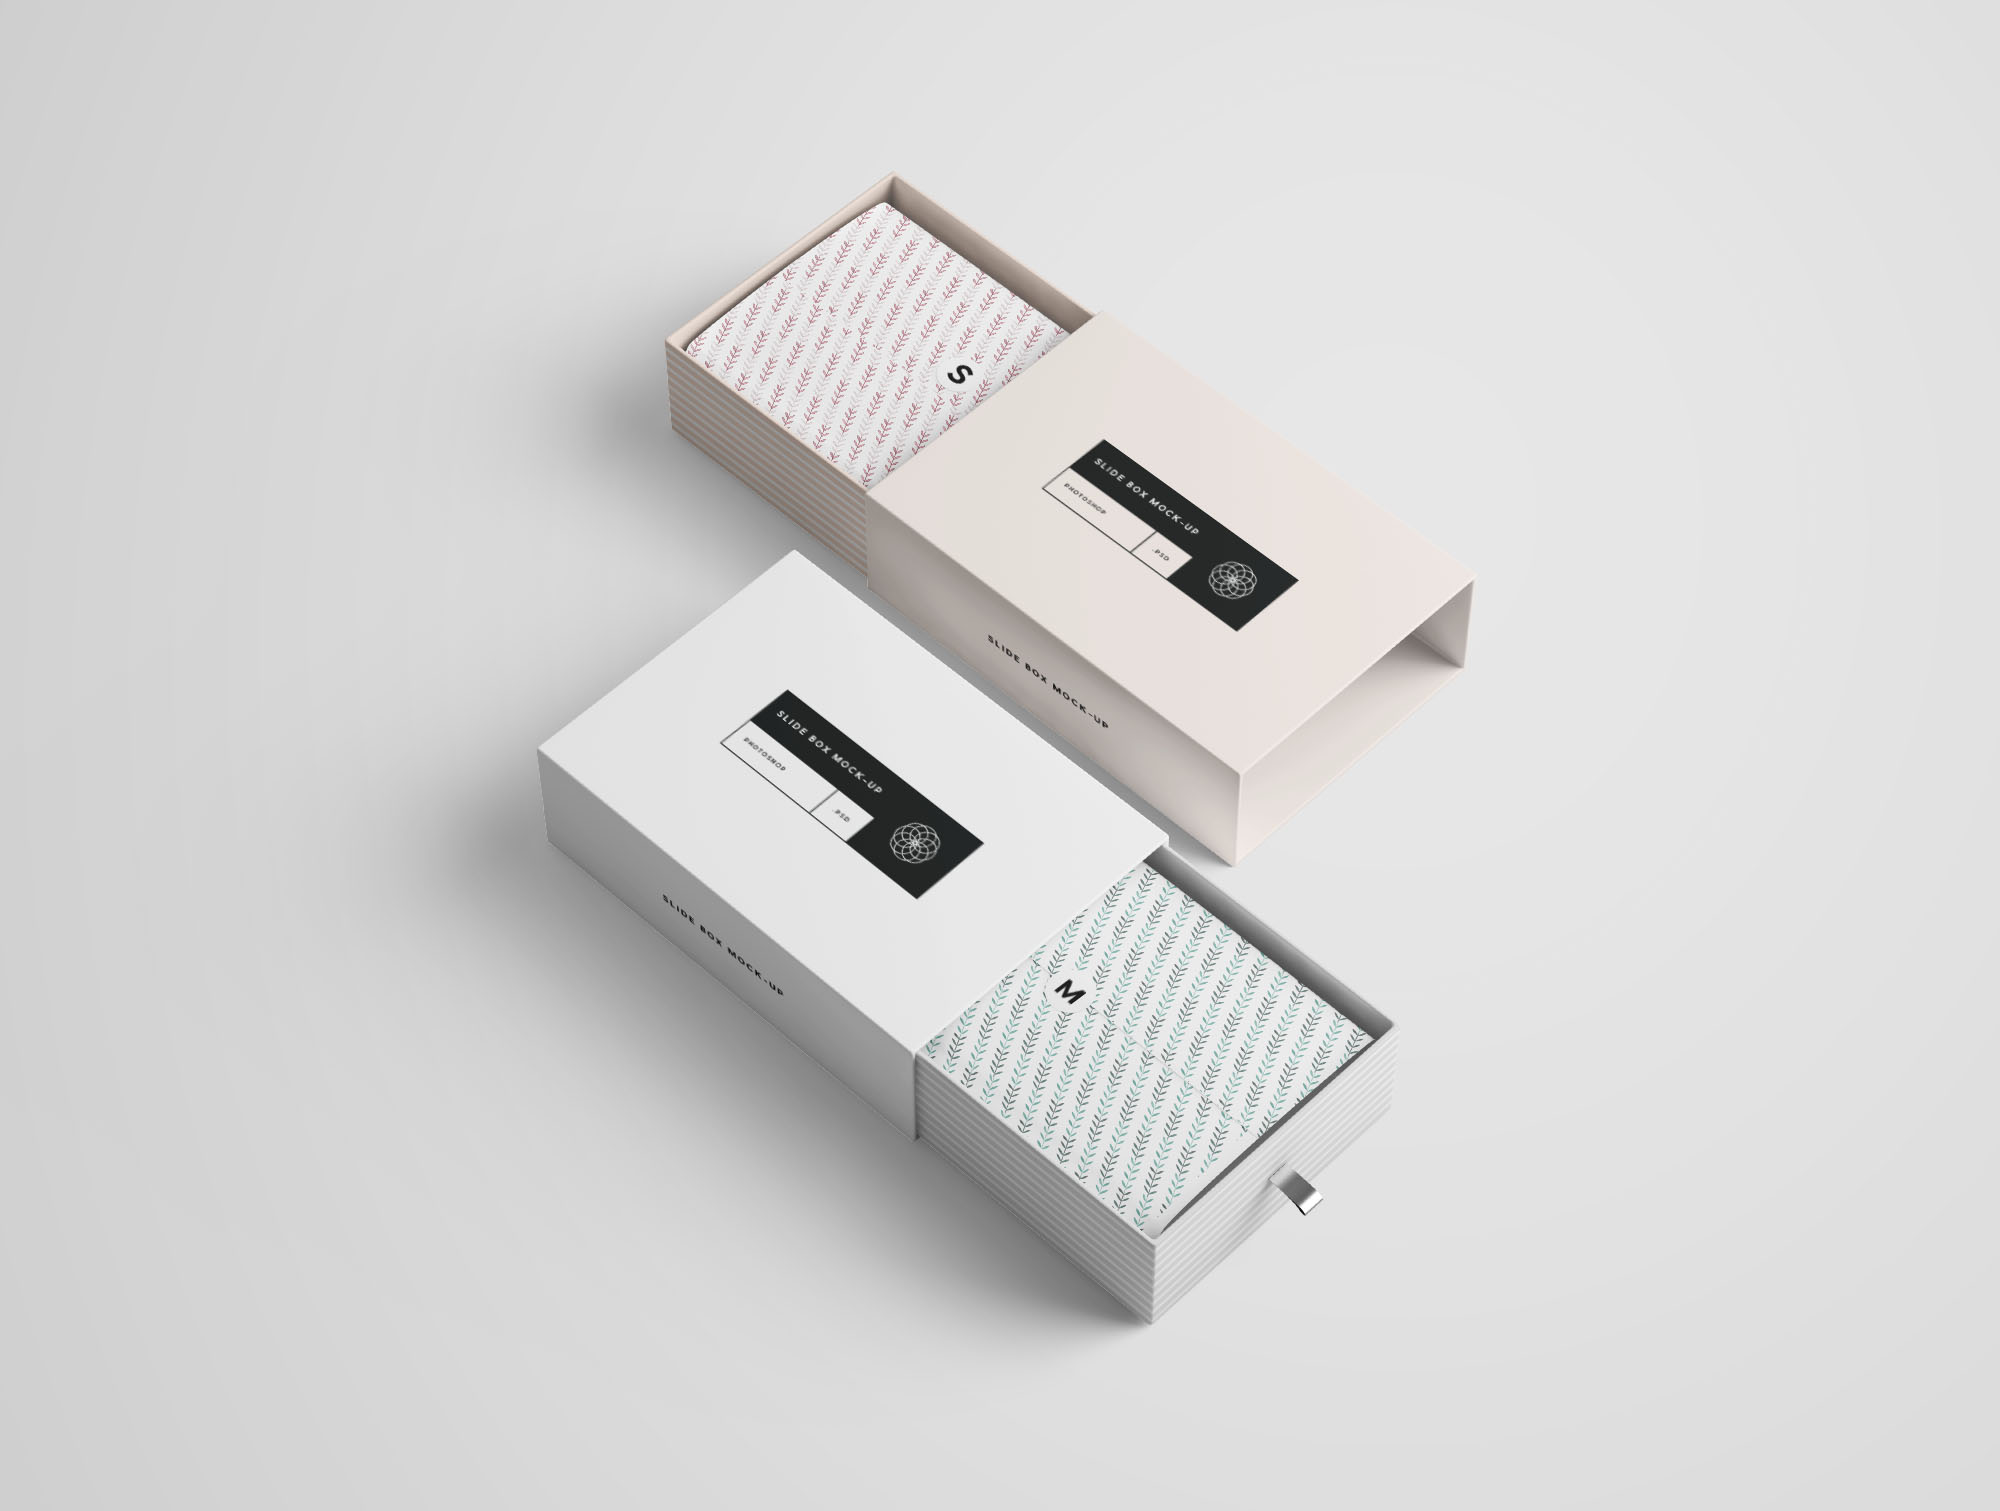 矩形抽屉式包装盒礼品盒包装设计效果图样机 Rectangle Slide Box Mockup插图(3)